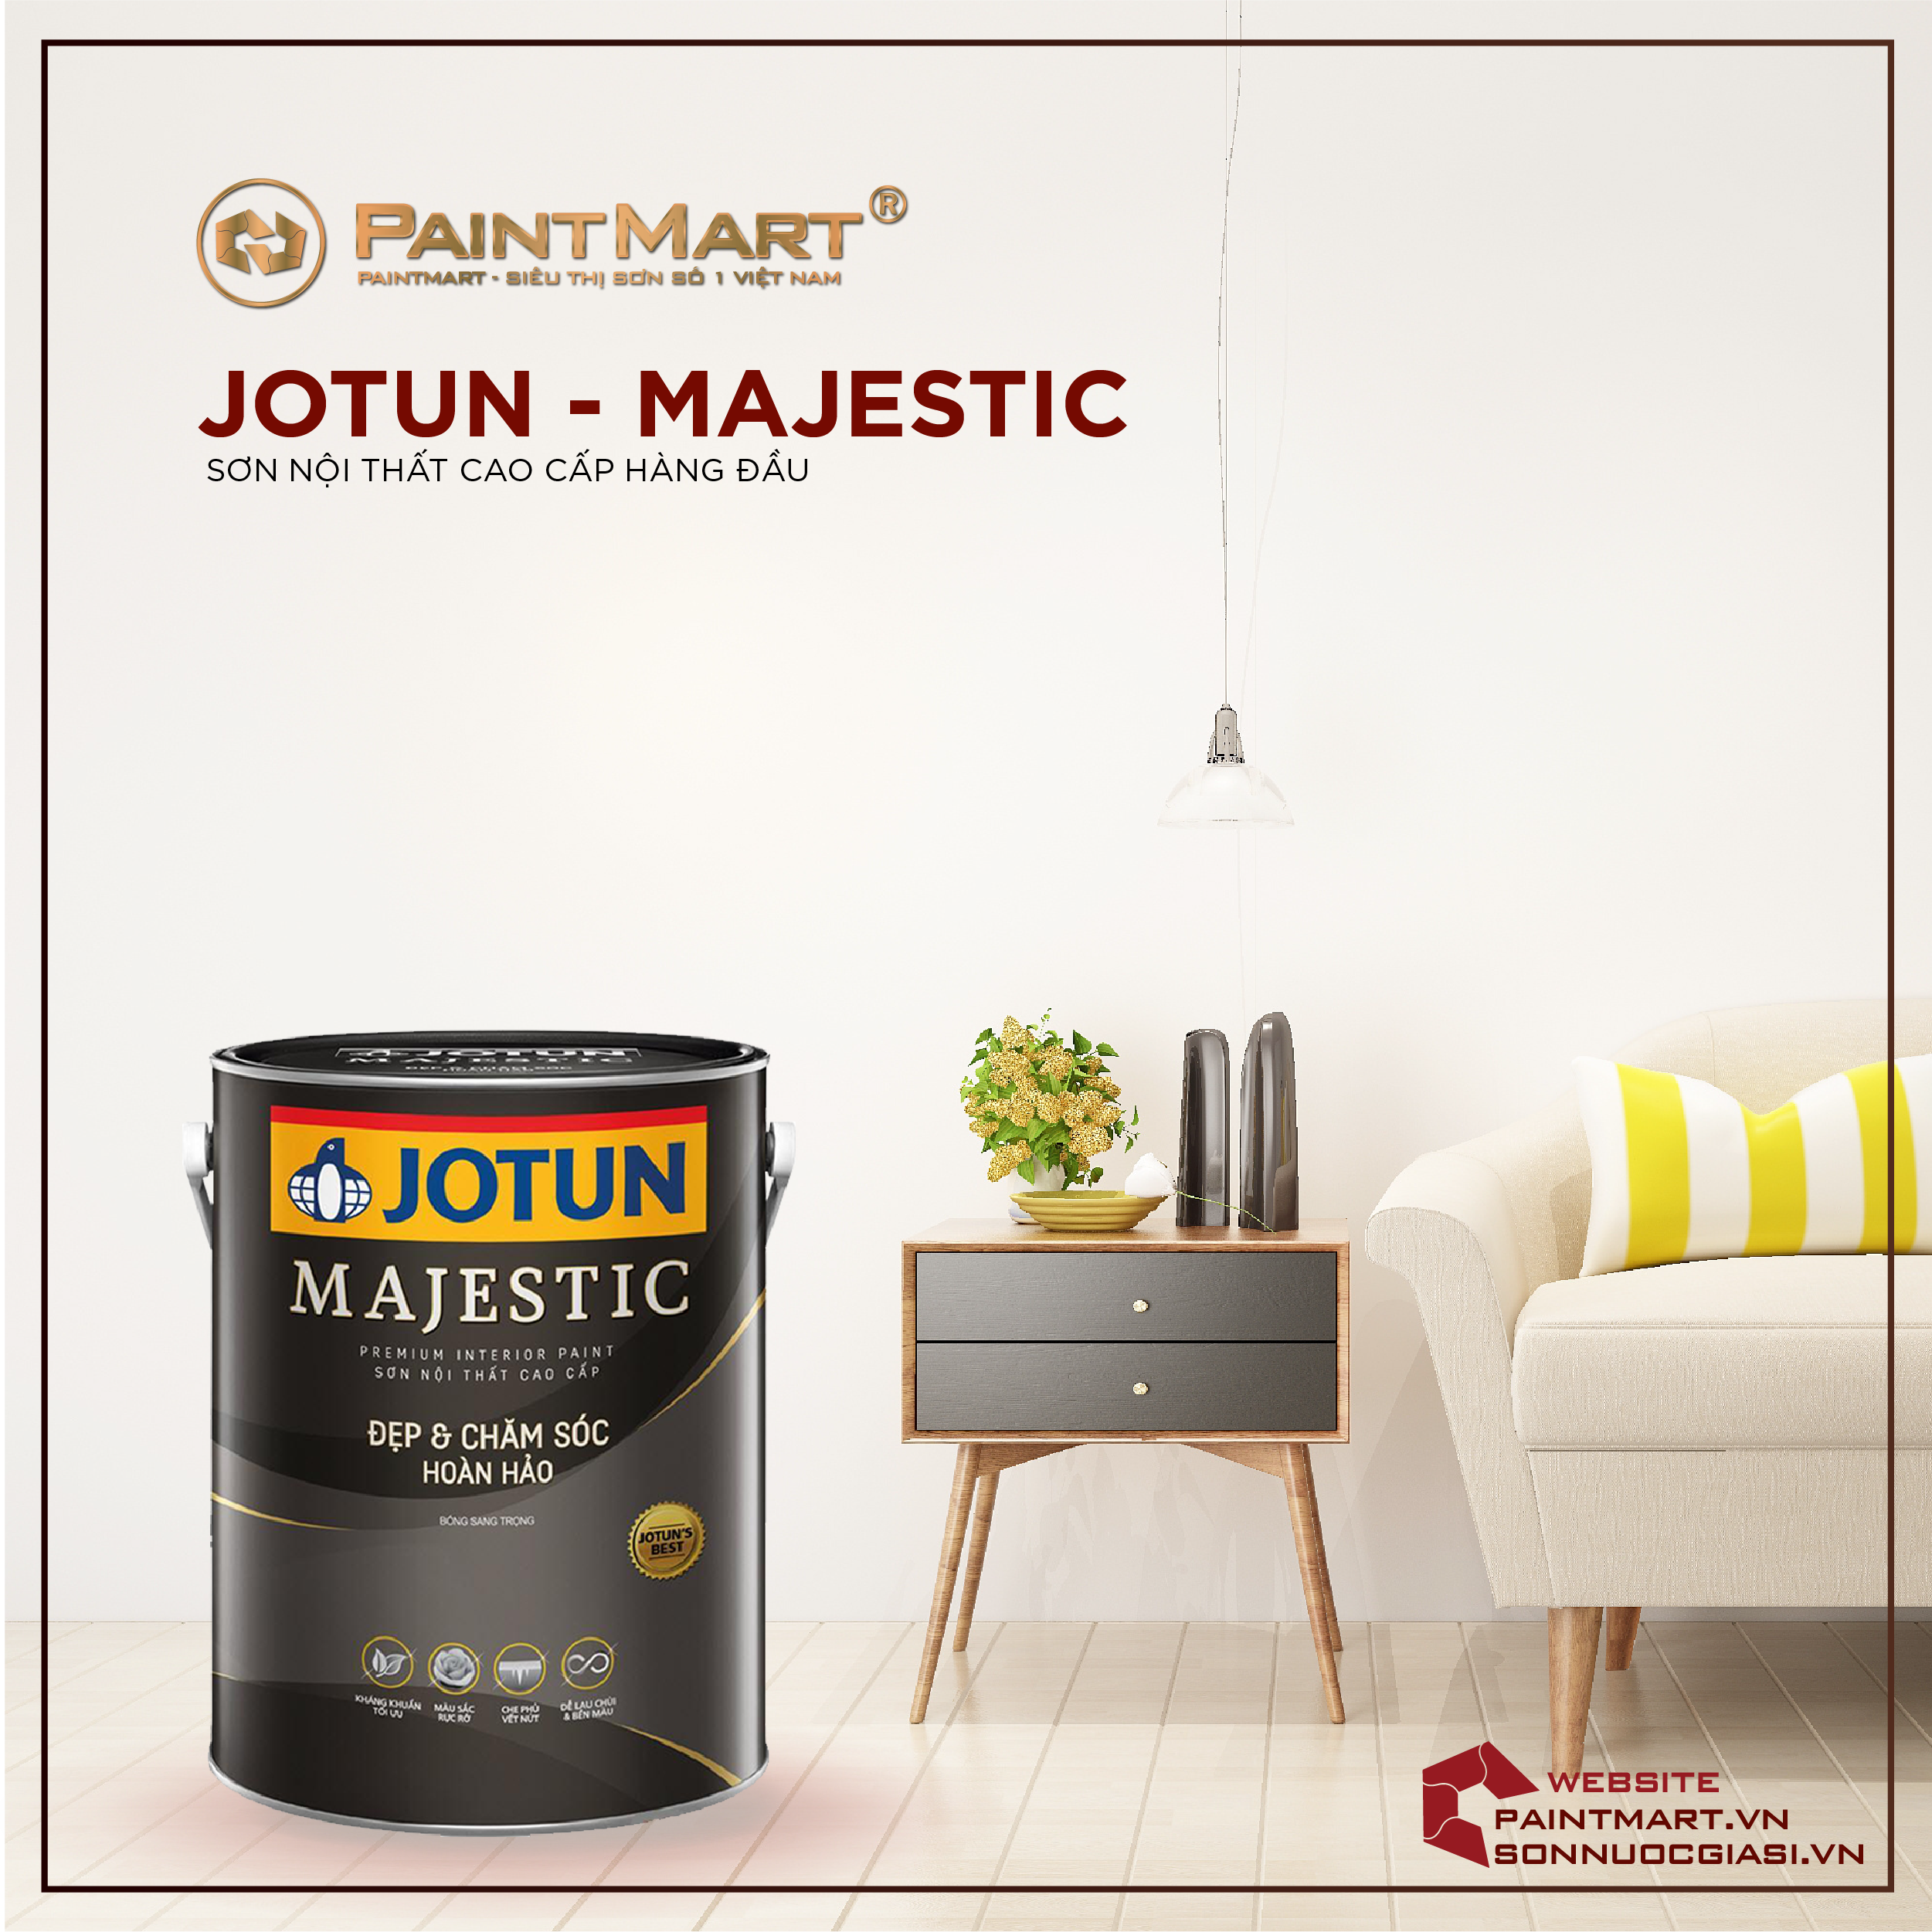 Jotun Majestic: Với công nghệ tiên tiến của Jotun, sơn Majestic không chỉ đem lại màu sắc và bóng mịn, mà còn cho độ bền cao và chống thấm hoàn hảo. Hãy xem hình ảnh về sơn Jotun Majestic để hiểu thêm về độ chuyên nghiệp trong việc sơn nhà của Jotun.